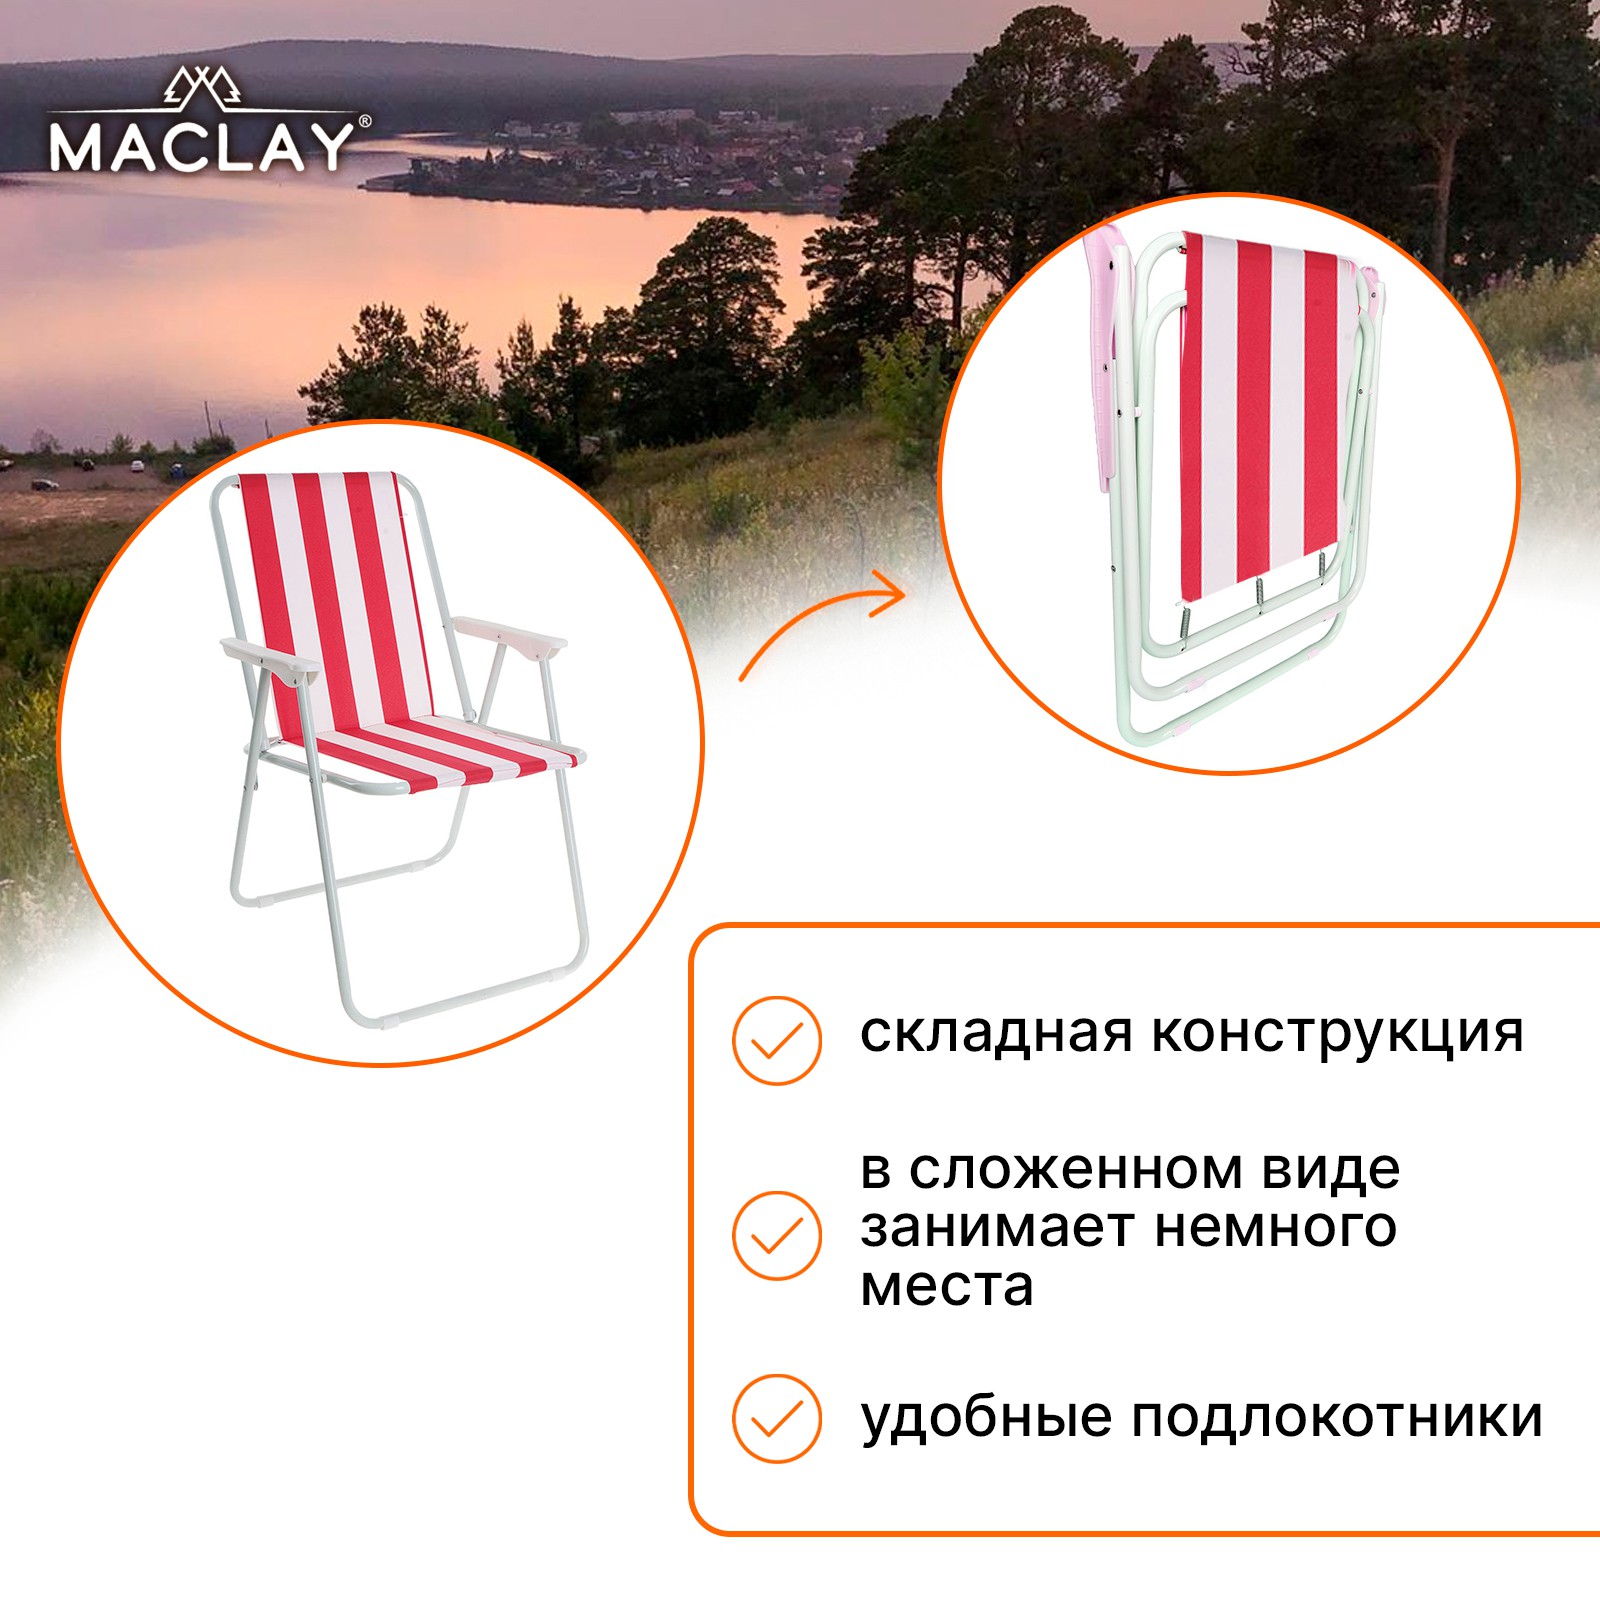 Кресло Maclay складное Sorrento 16. «F» р. 46 х 52 х 71 см до 80 кг - фото 2